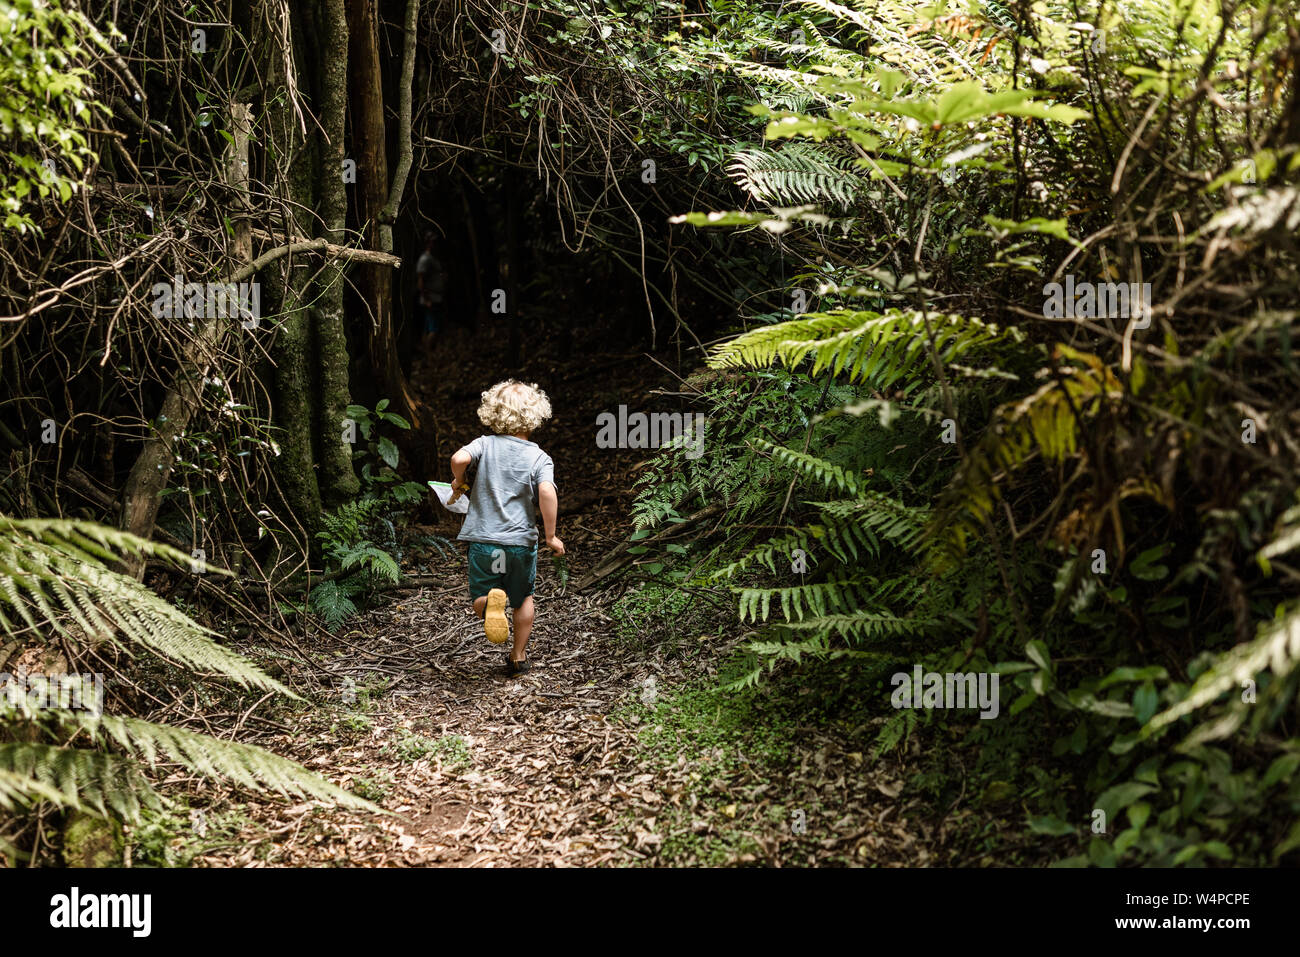 Jeune garçon courir dans une forêt luxuriante Banque D'Images